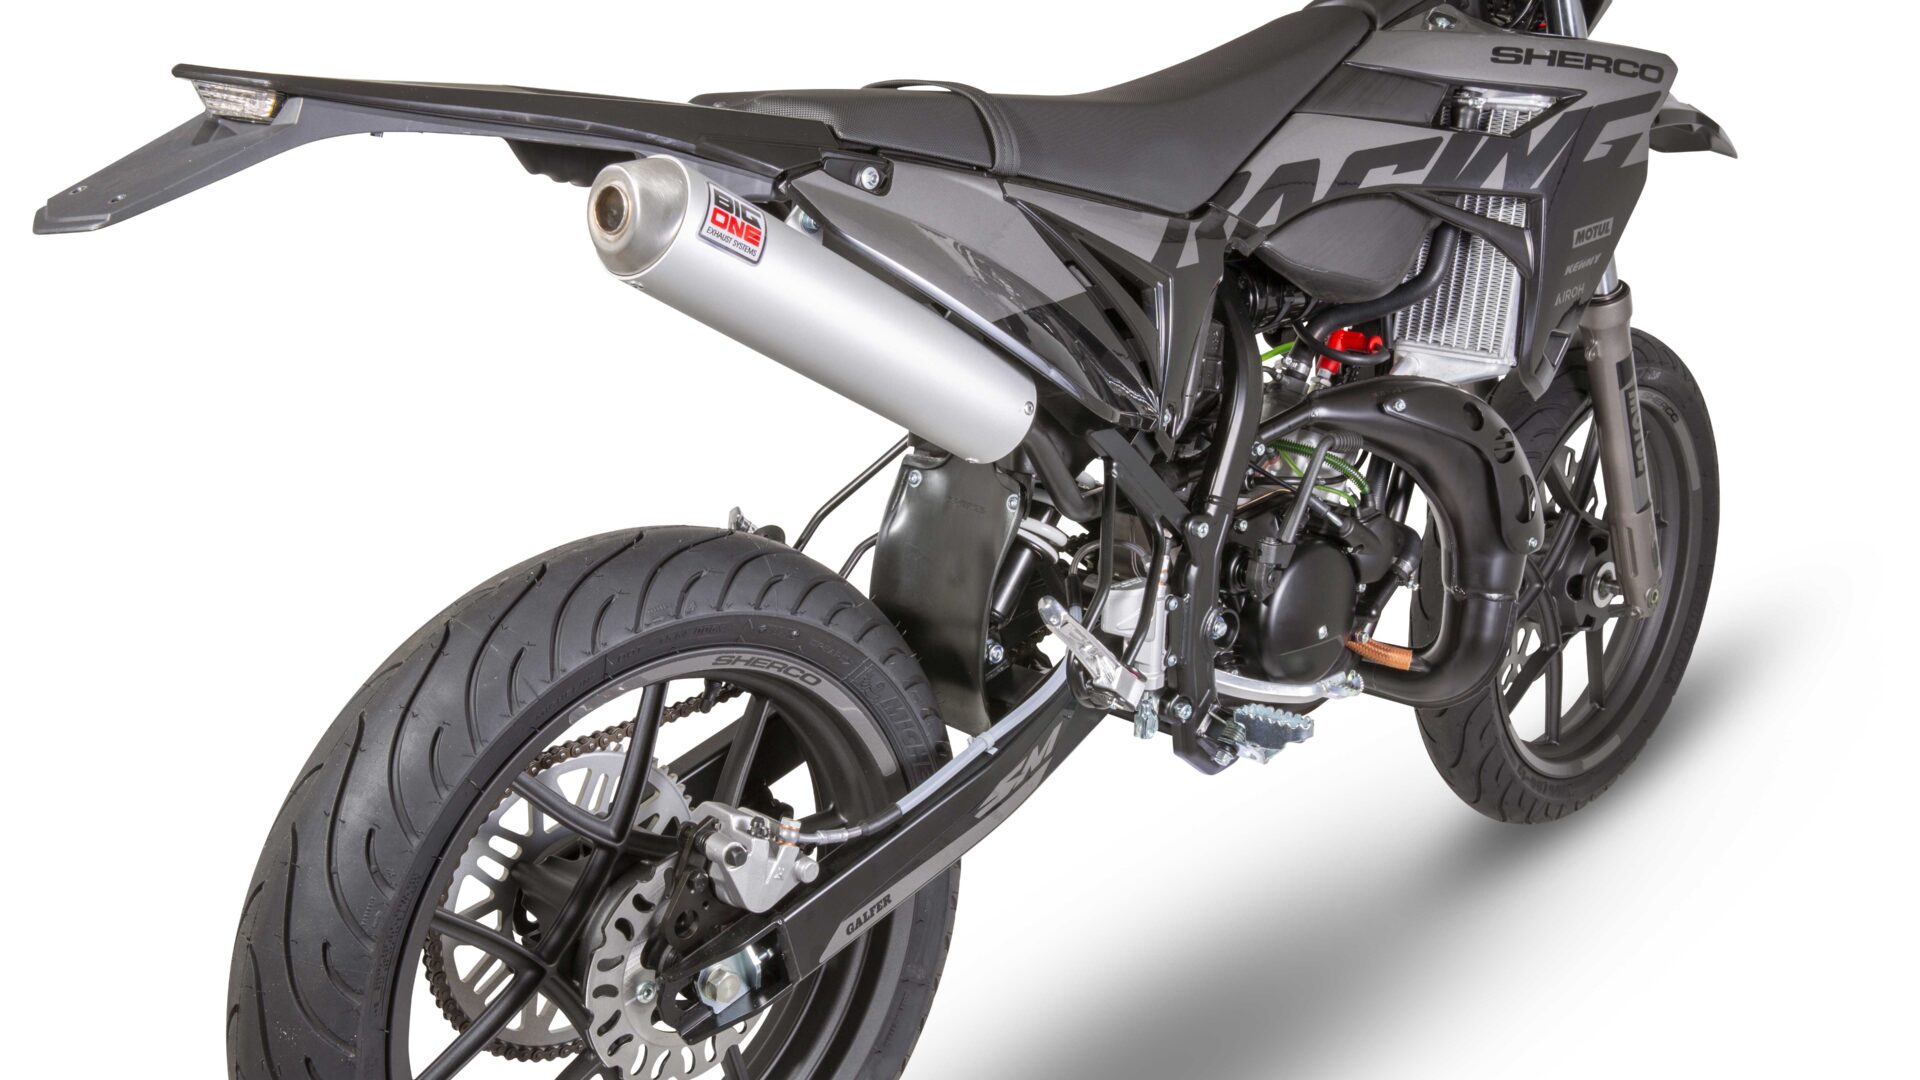  BKS SELLERIE - Housse de Selle Moto 50cc Evo Black - Sherco  SM-R/Sherco SM-RS/Sherco SE-R/Sherco SE-RS - Version Supermotard (SM) &  Enduro - Modèles Depuis 2013 - Violet